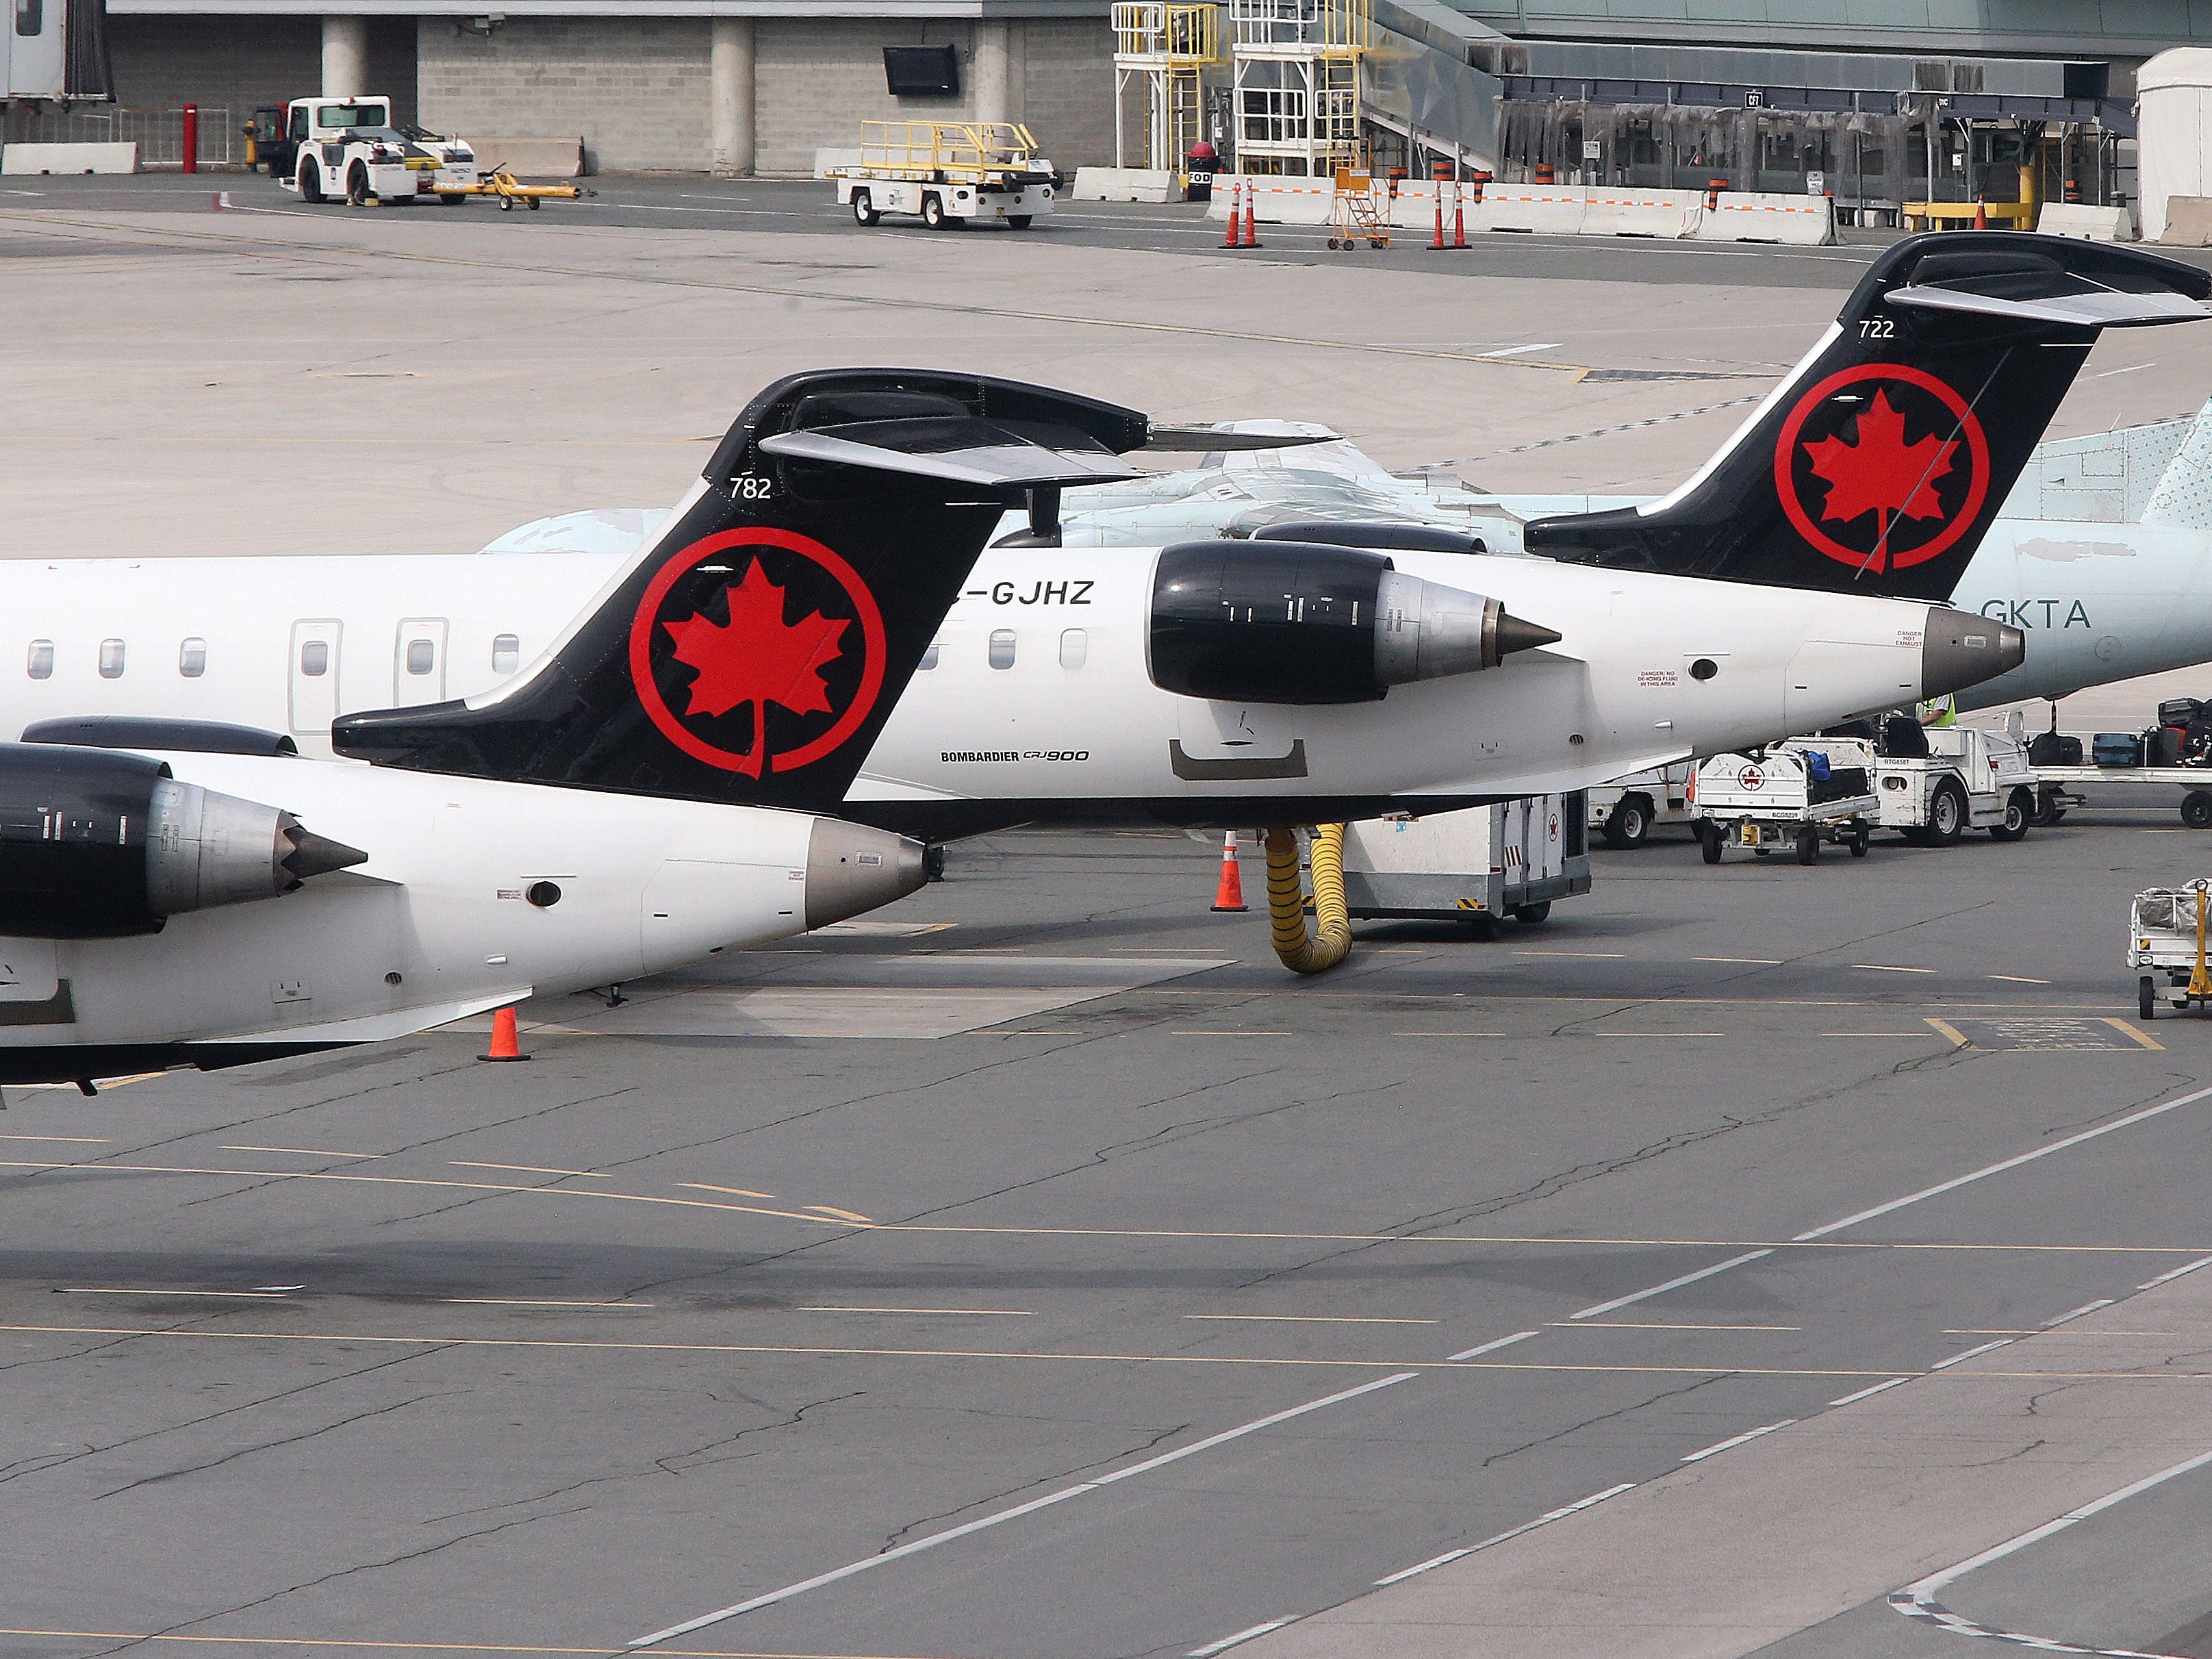 Flugzeuge der Air Canada stehen auf dem Rollfeld des Flughafens.